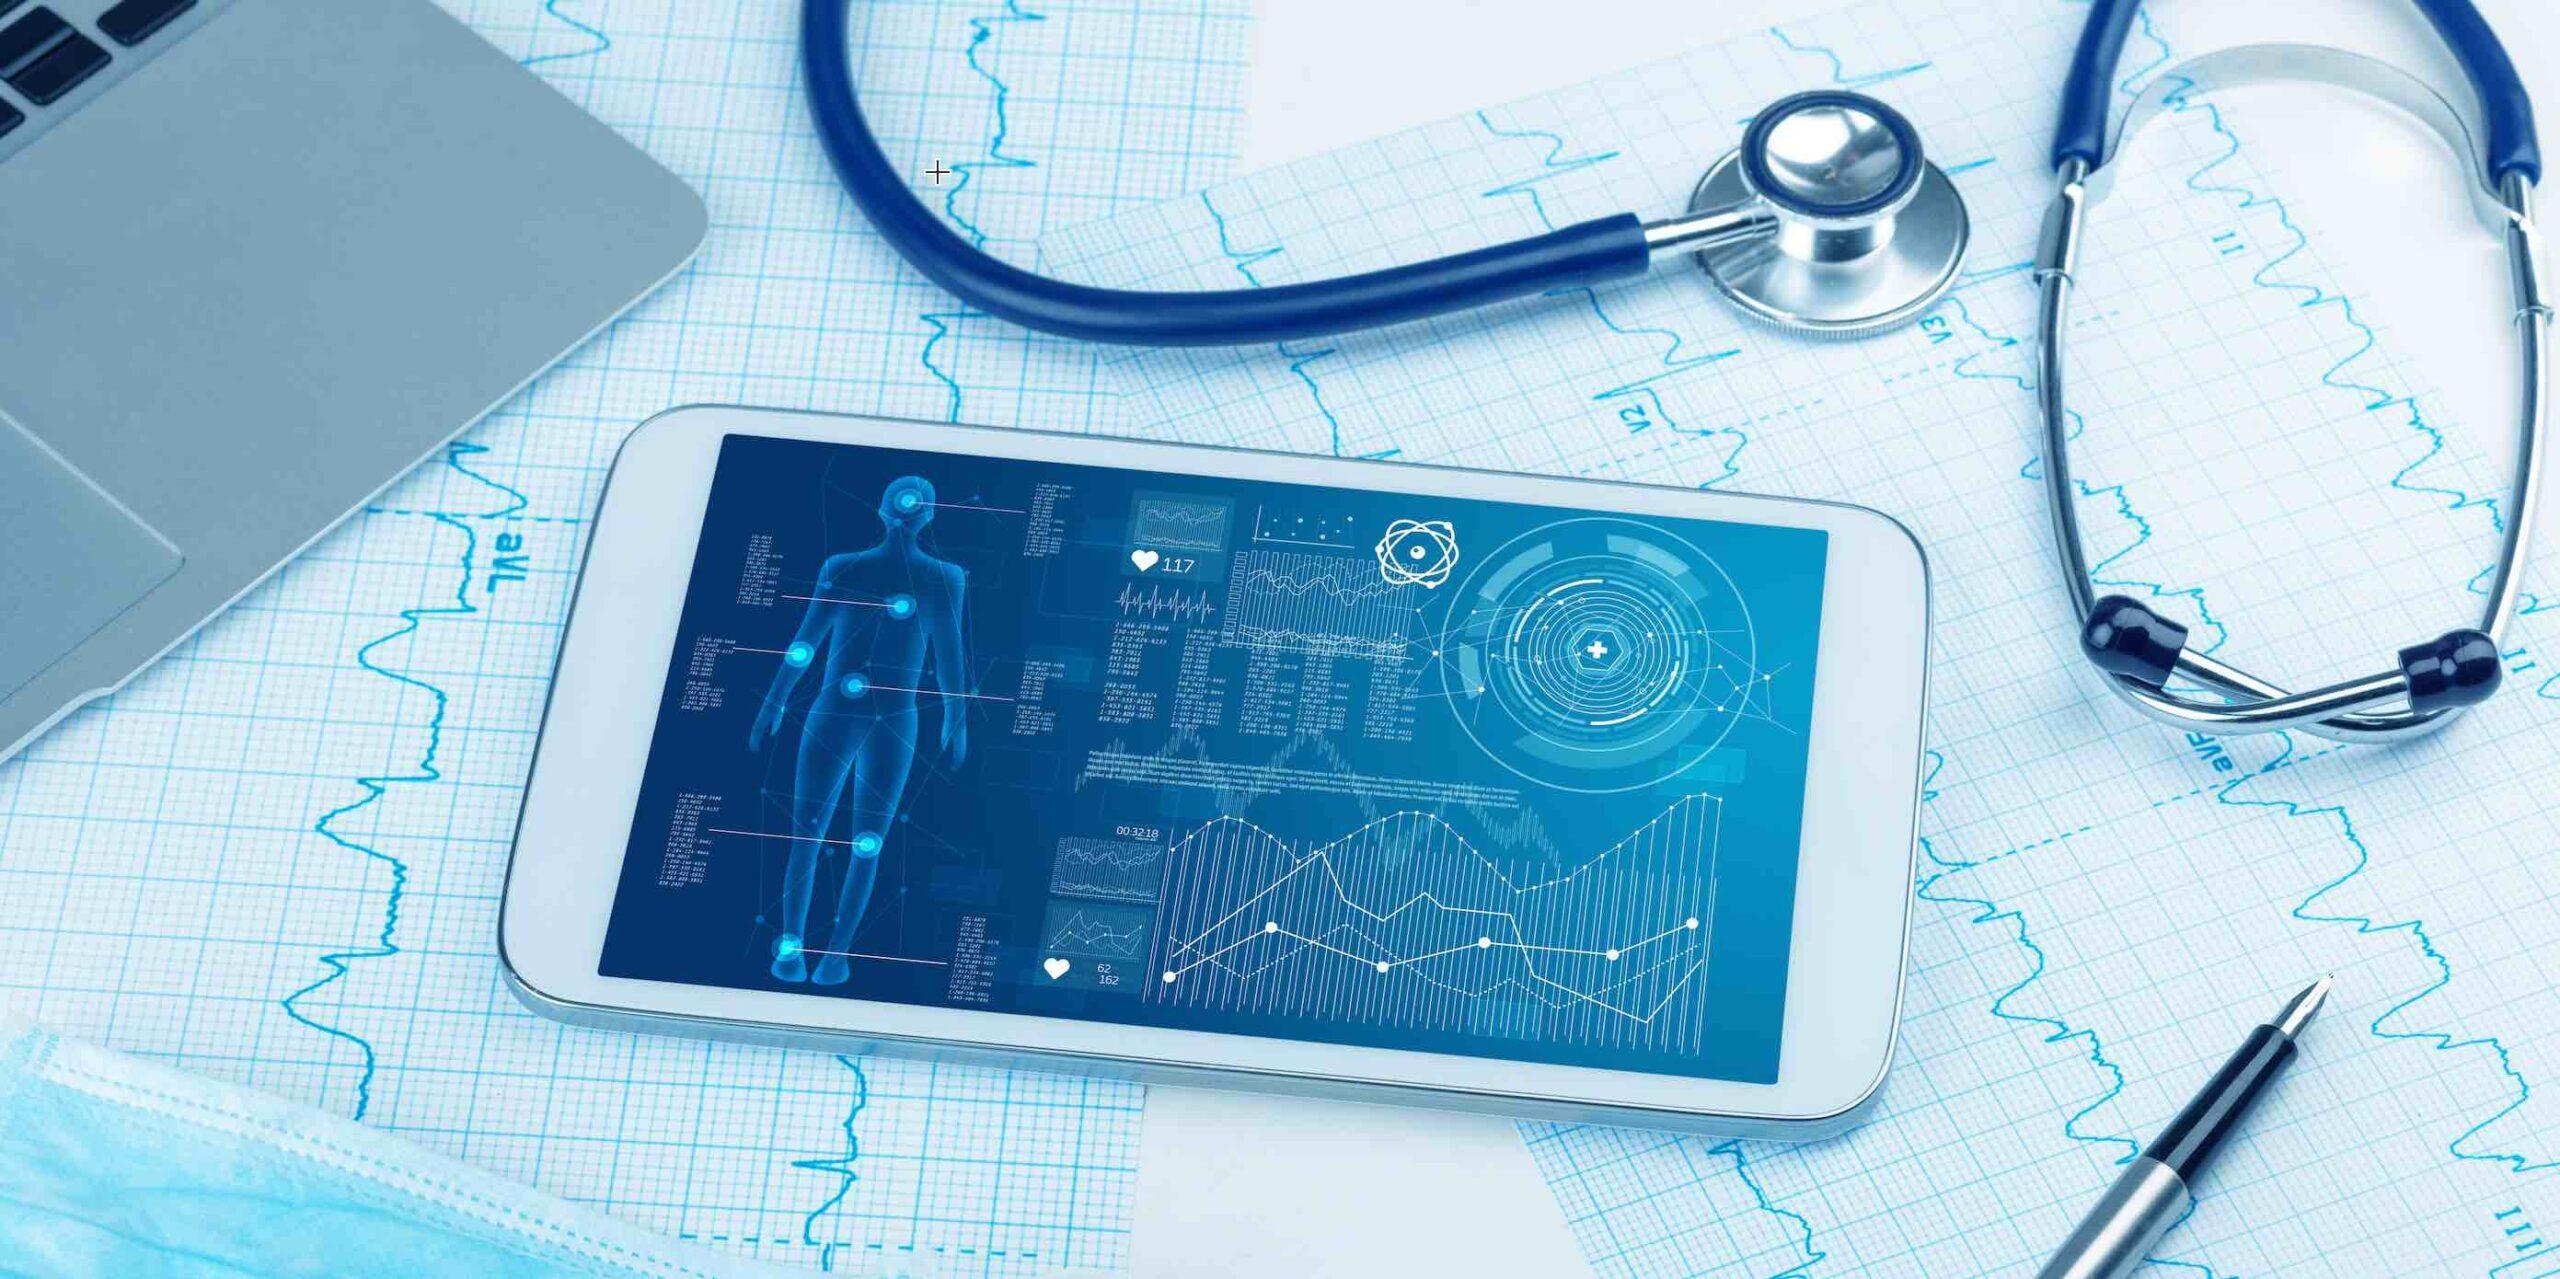 “Great challenges meet great opportunities in healthcare digitalisation”